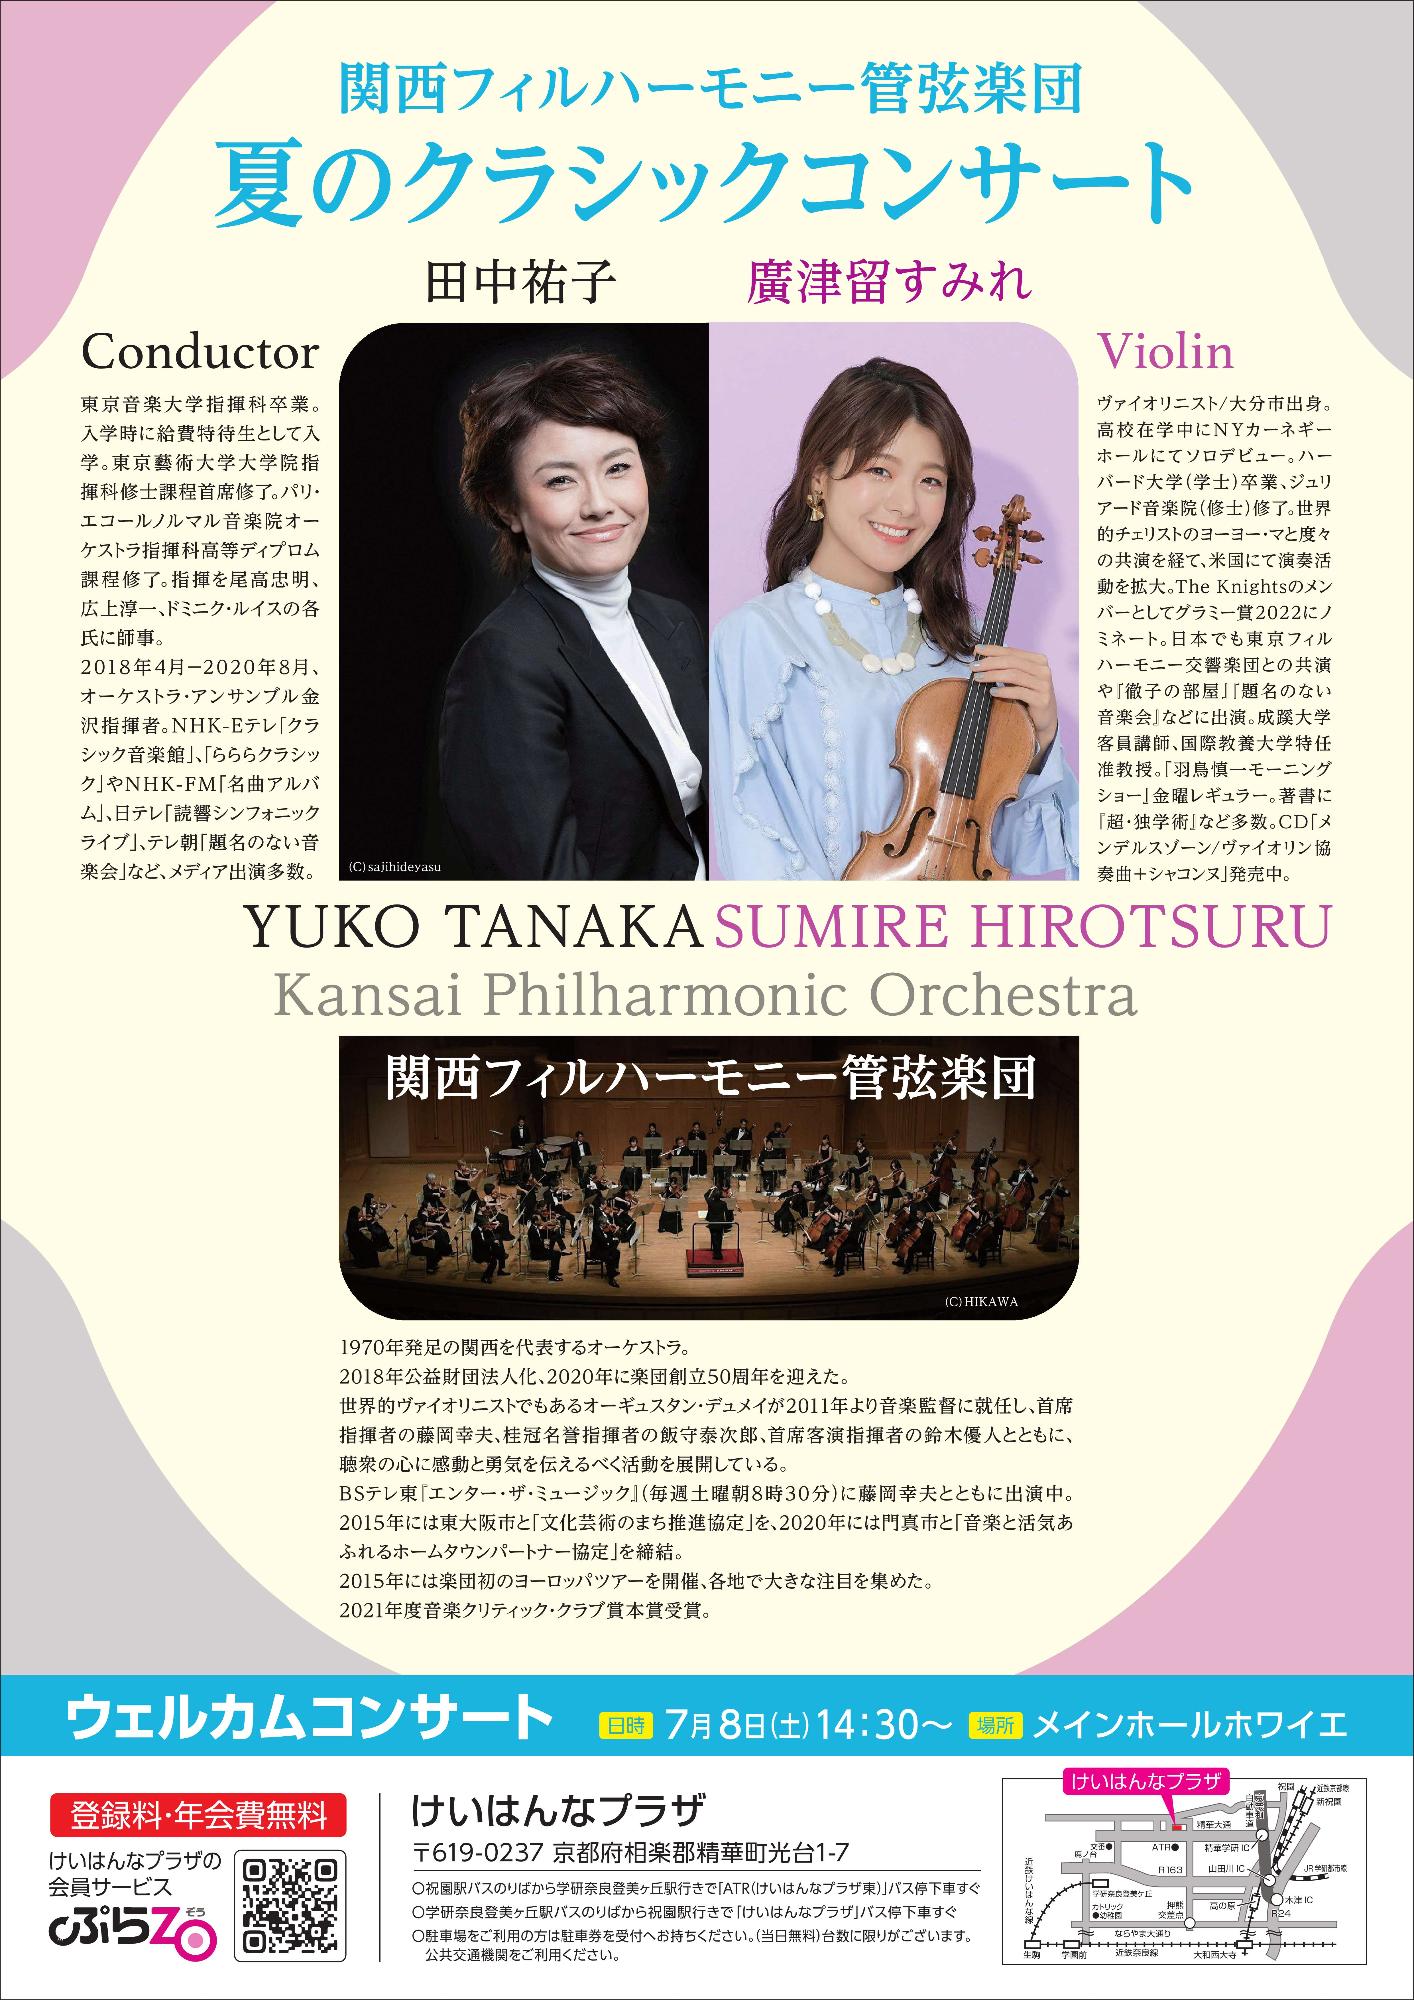 関西フィルハーモニー管弦楽団 夏のクラシックコンサート